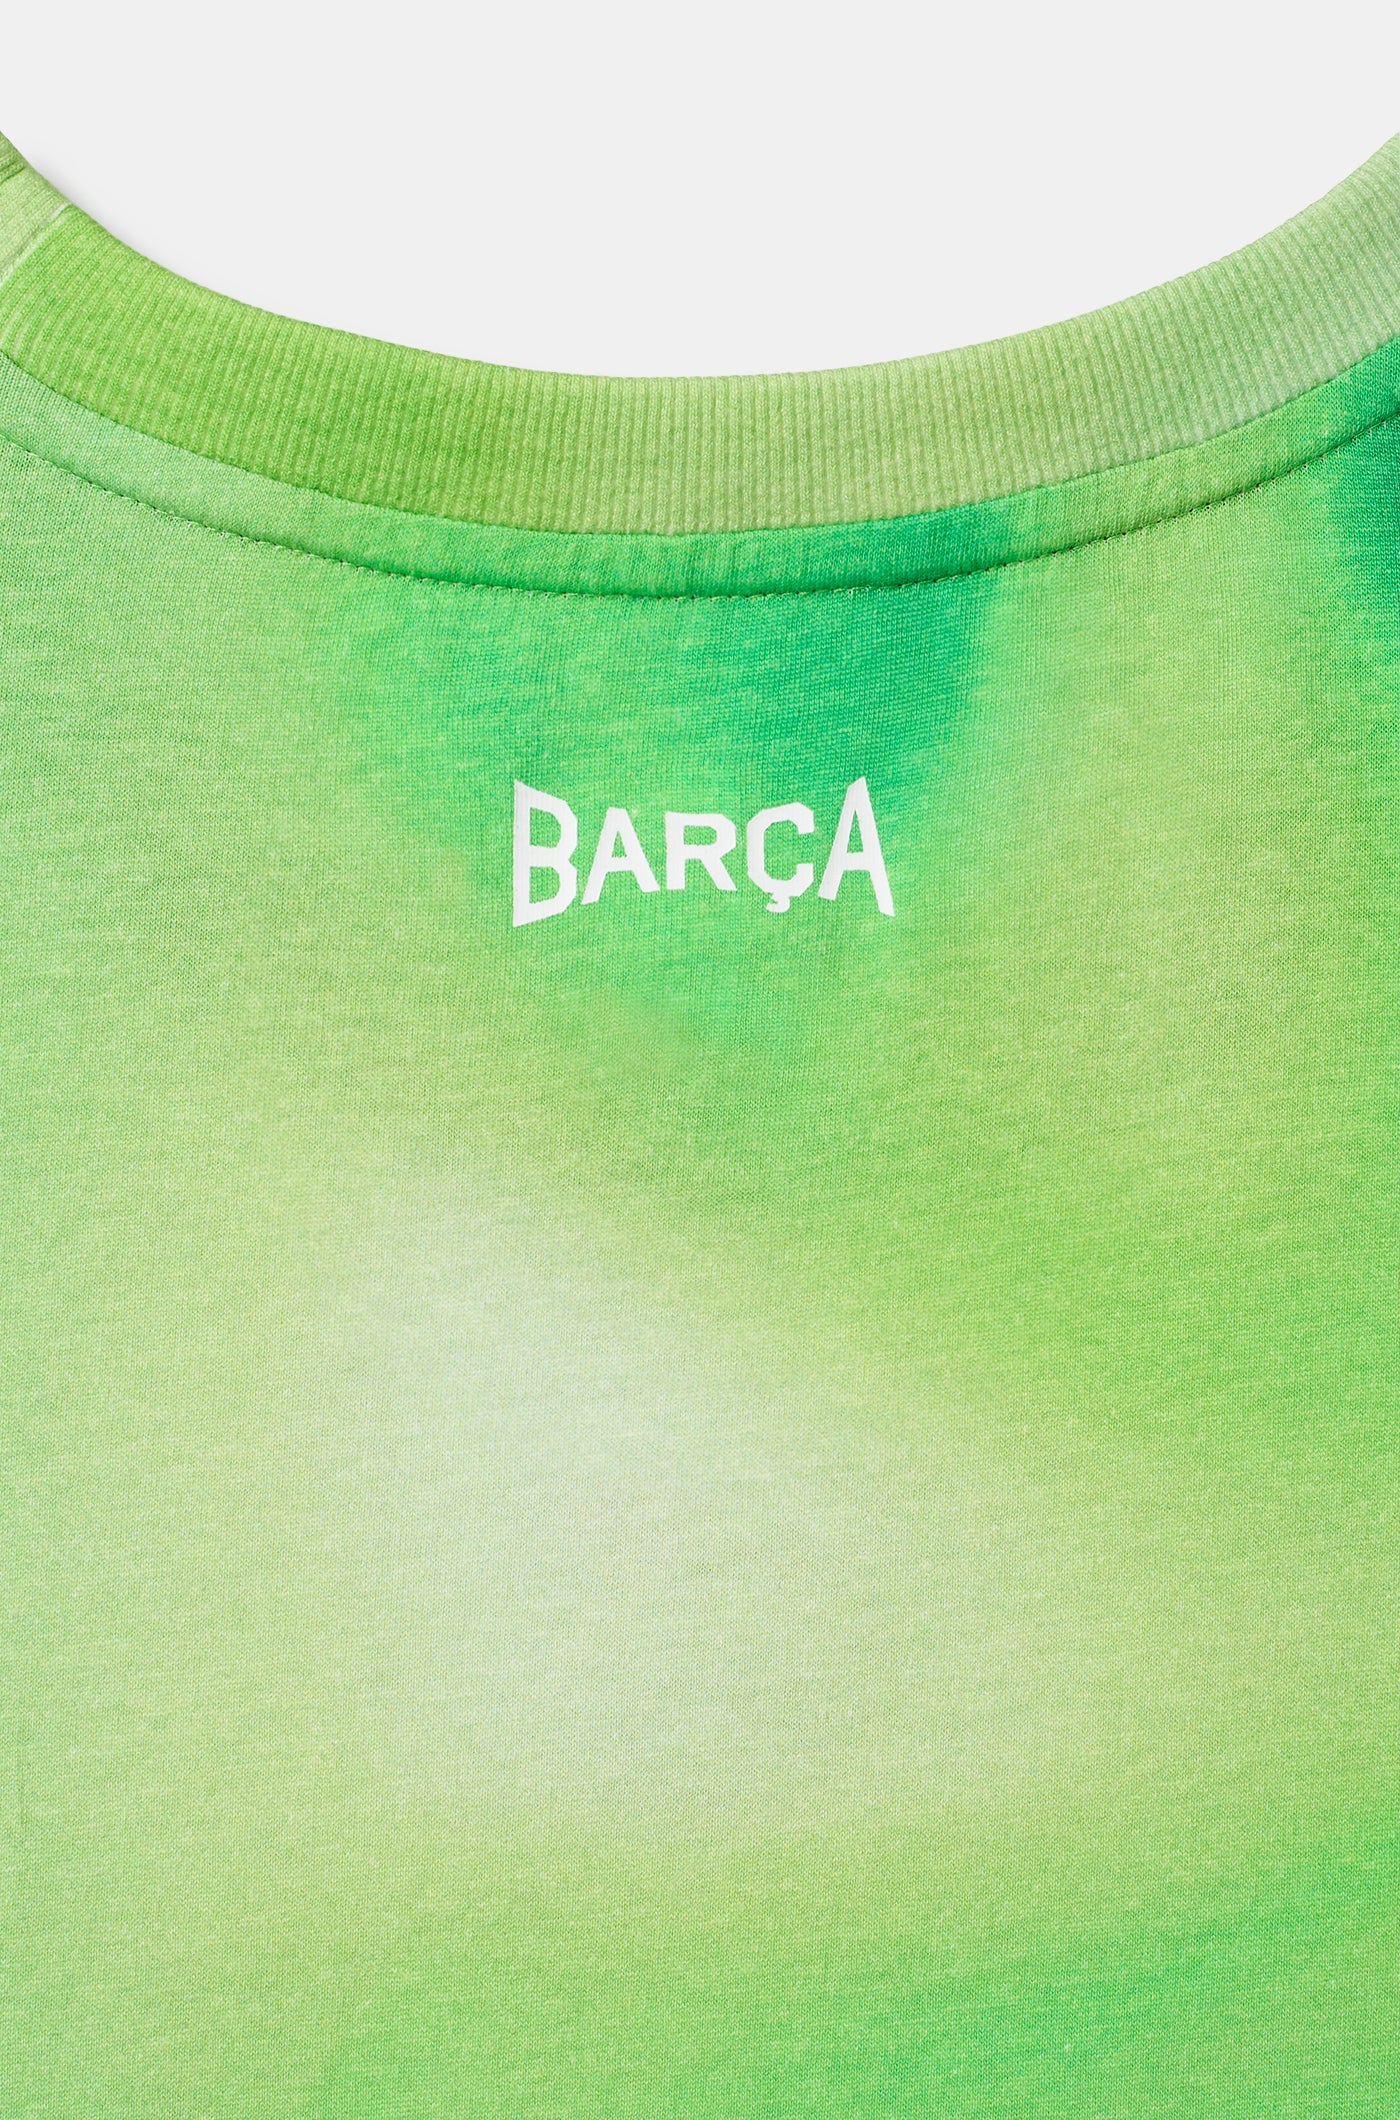 Tank top green Barça